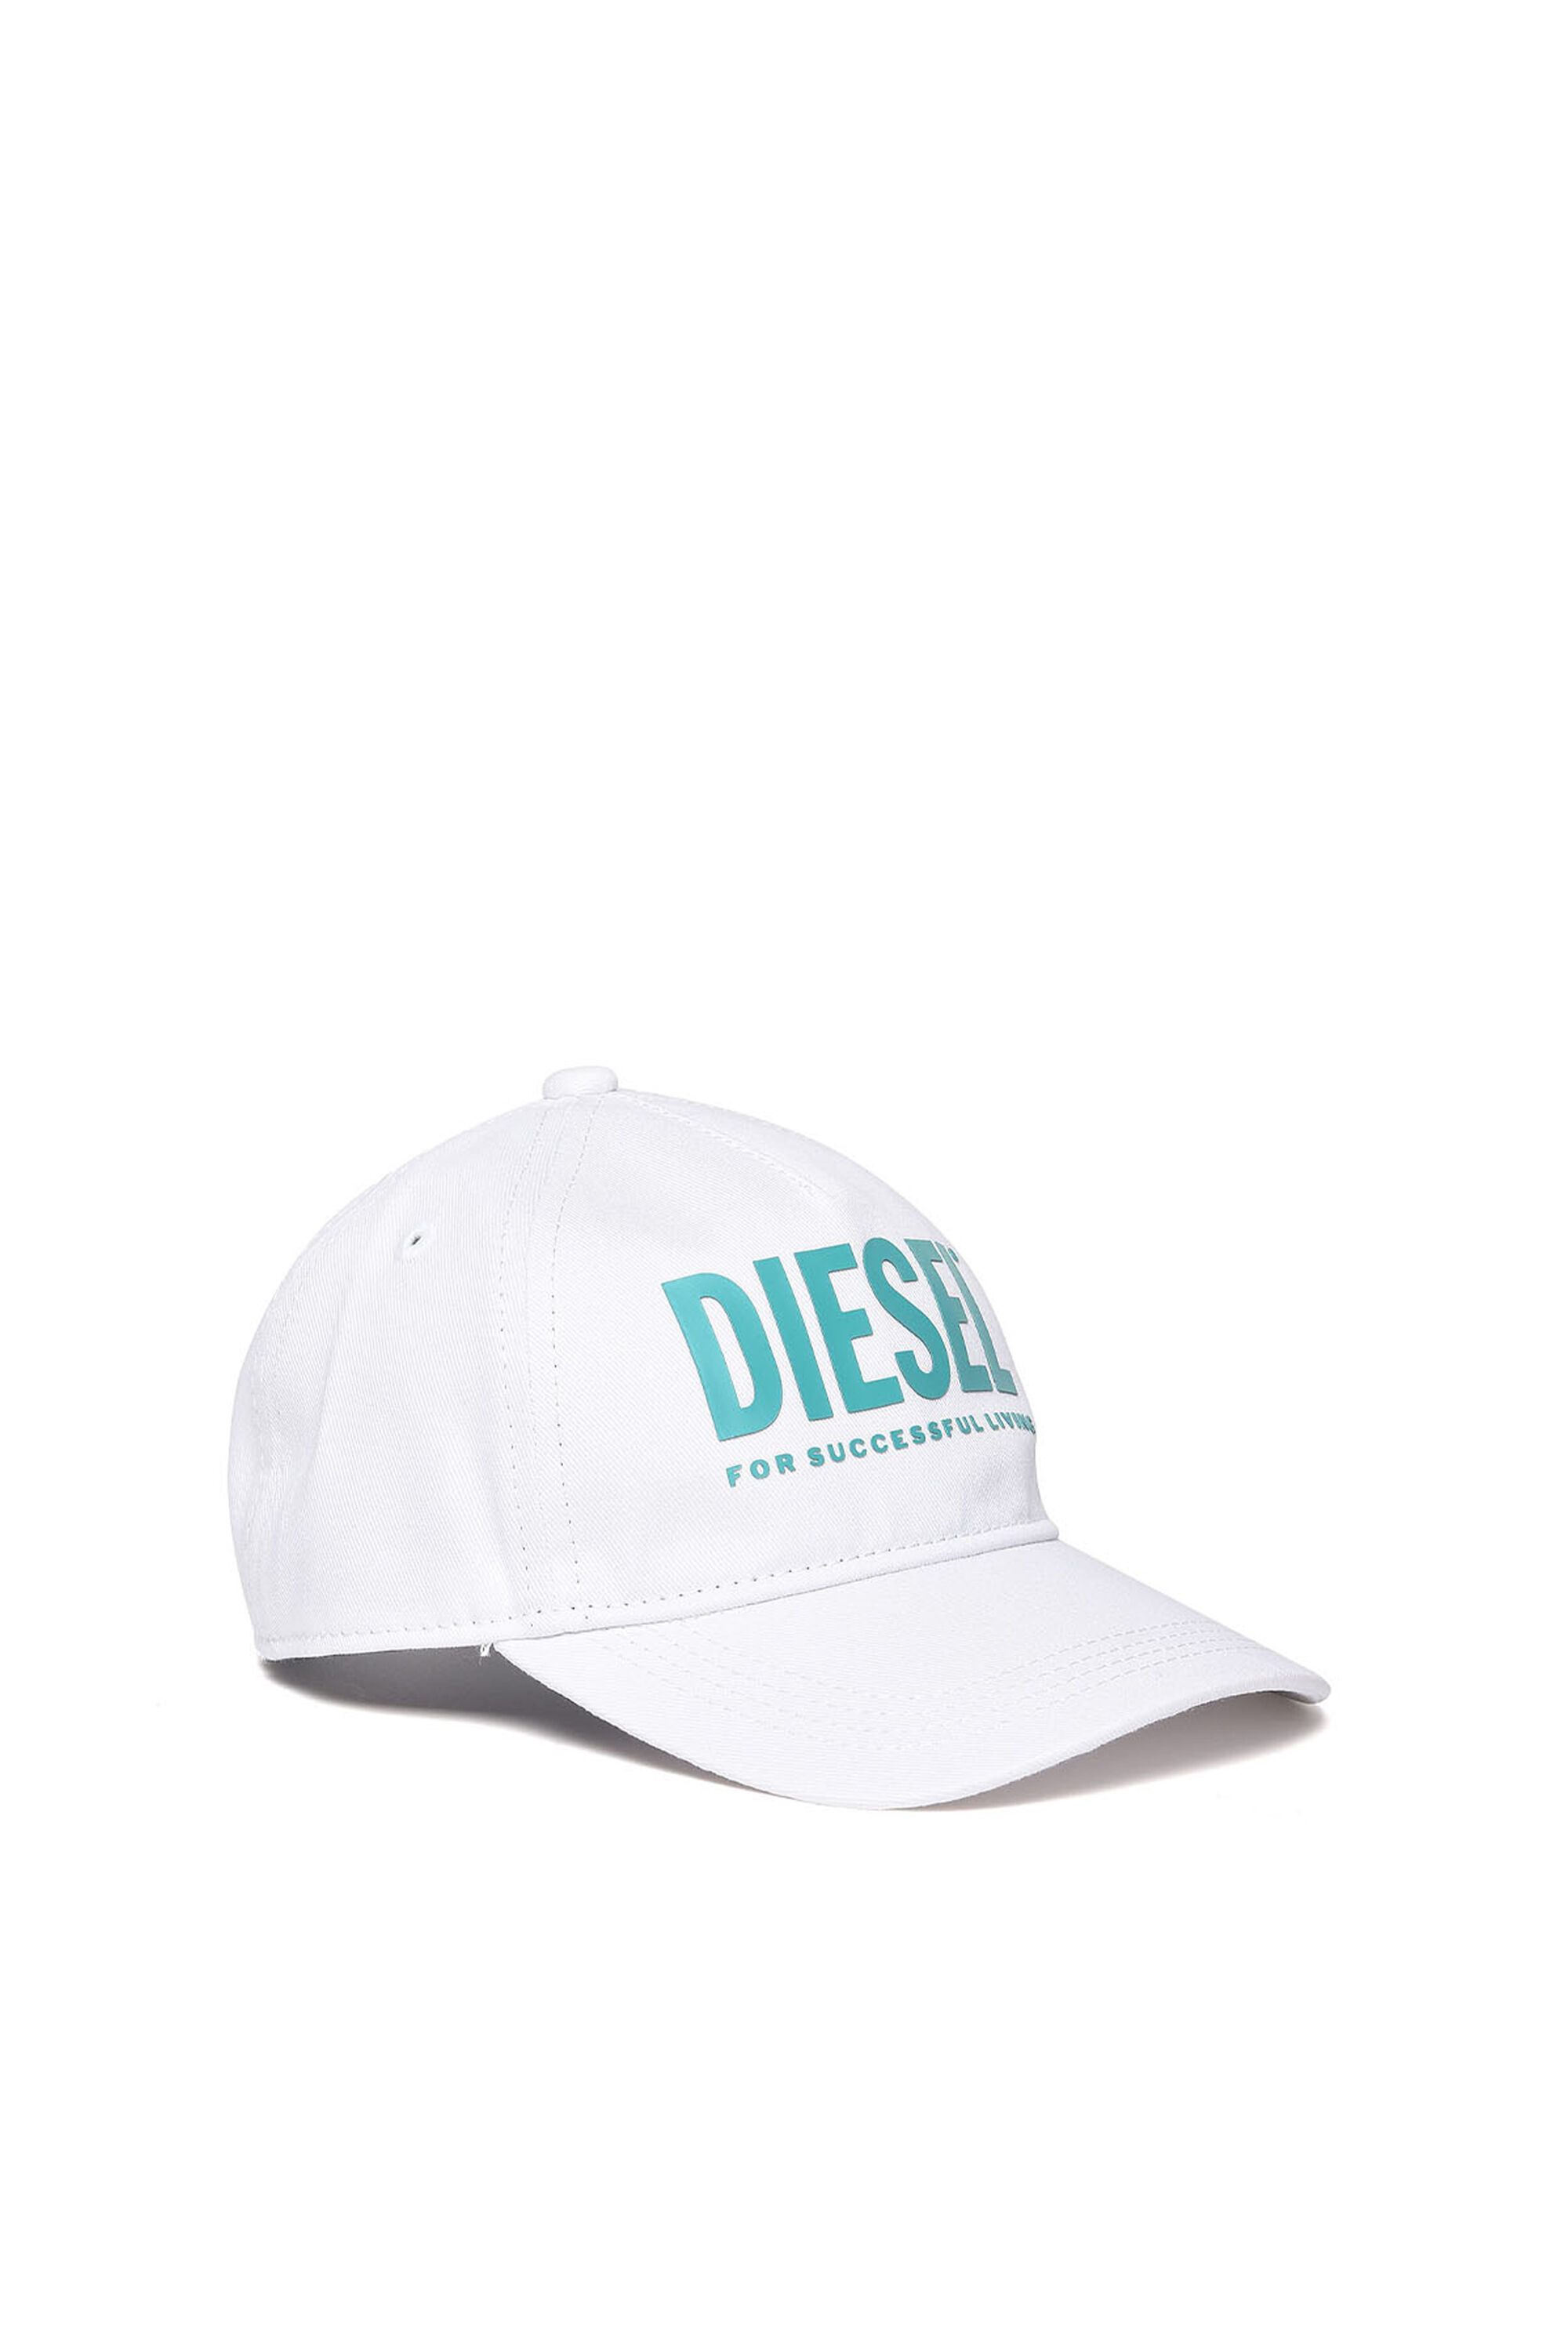 Diesel - FTOLLYB,  - Image 1